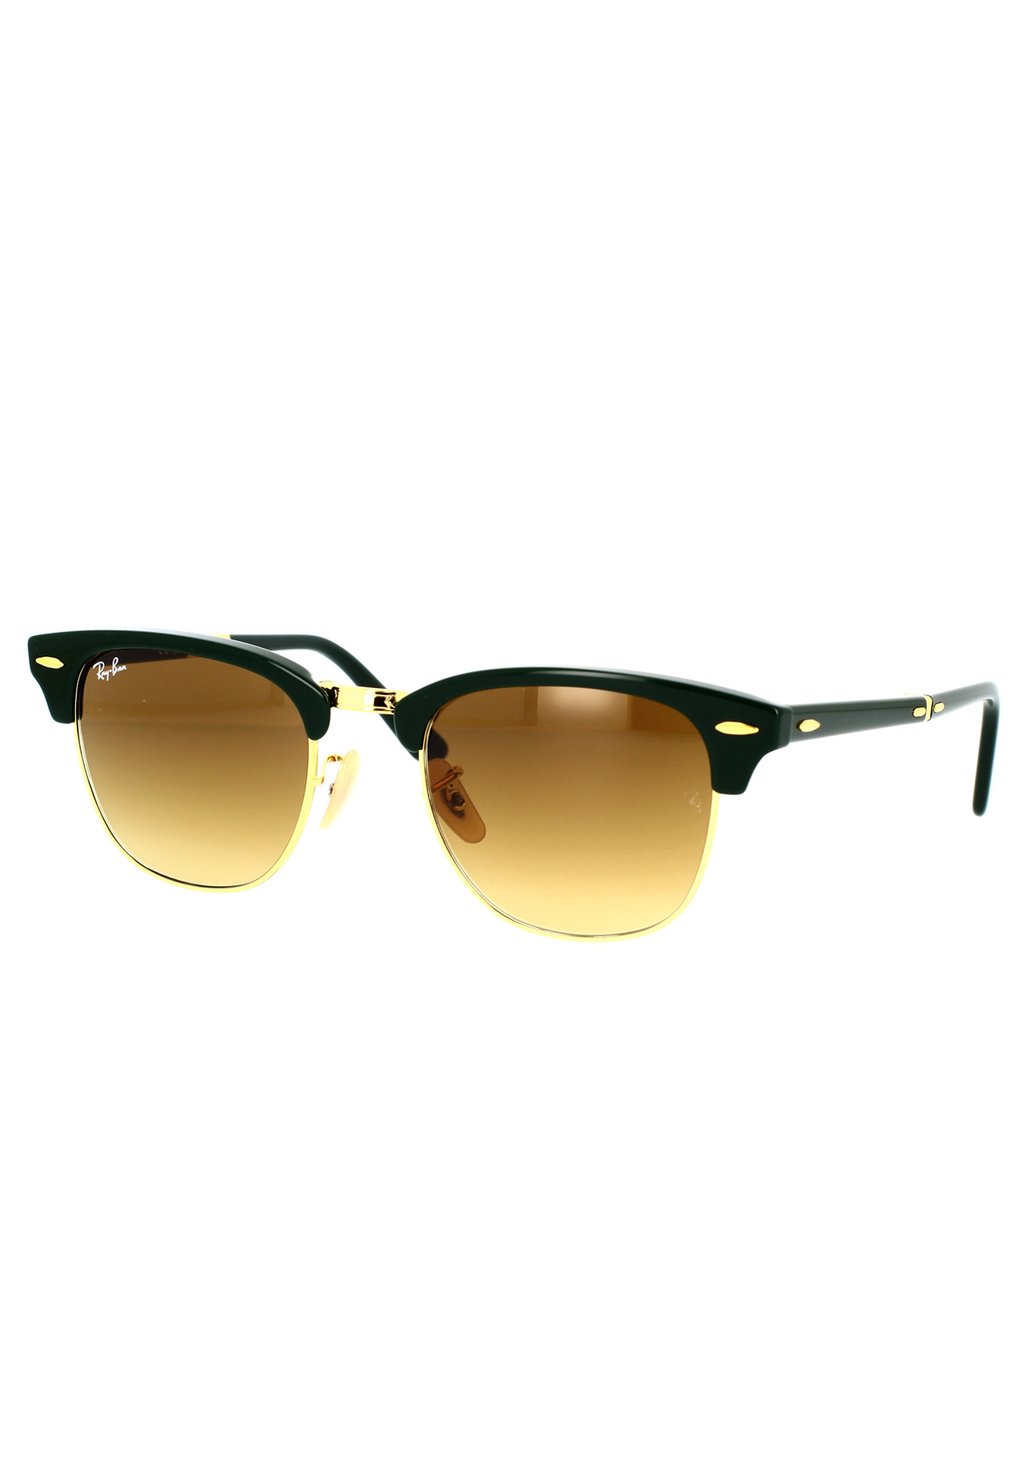 цена Солнцезащитные очки Clubmaster Folding Ray-Ban, зеленый